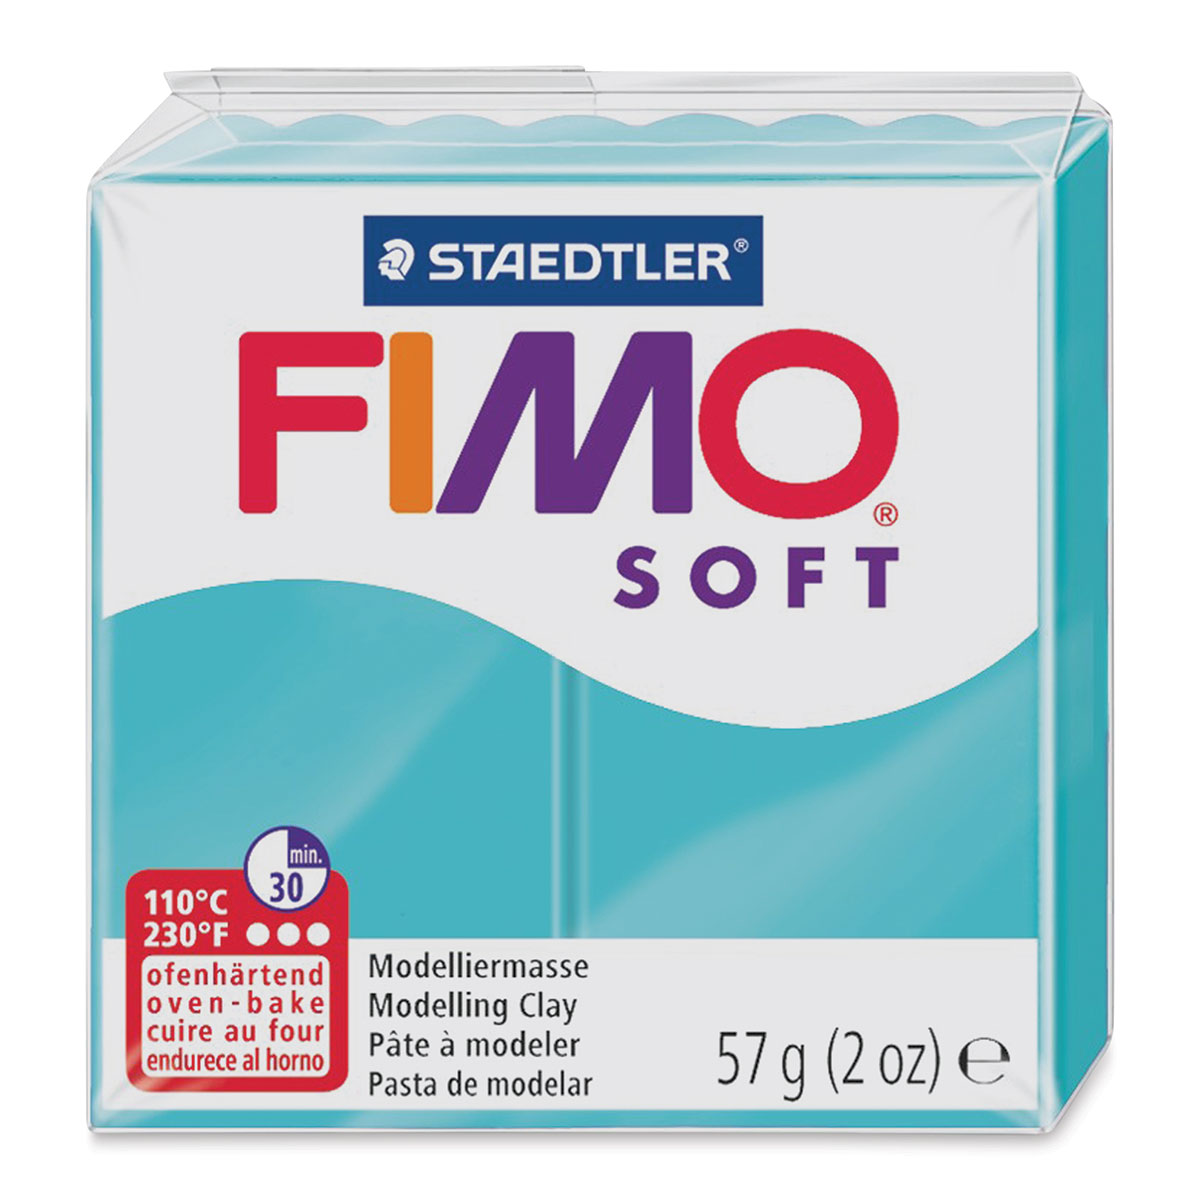 Steadtler Fimo Soft Starter PB00QHE98VK